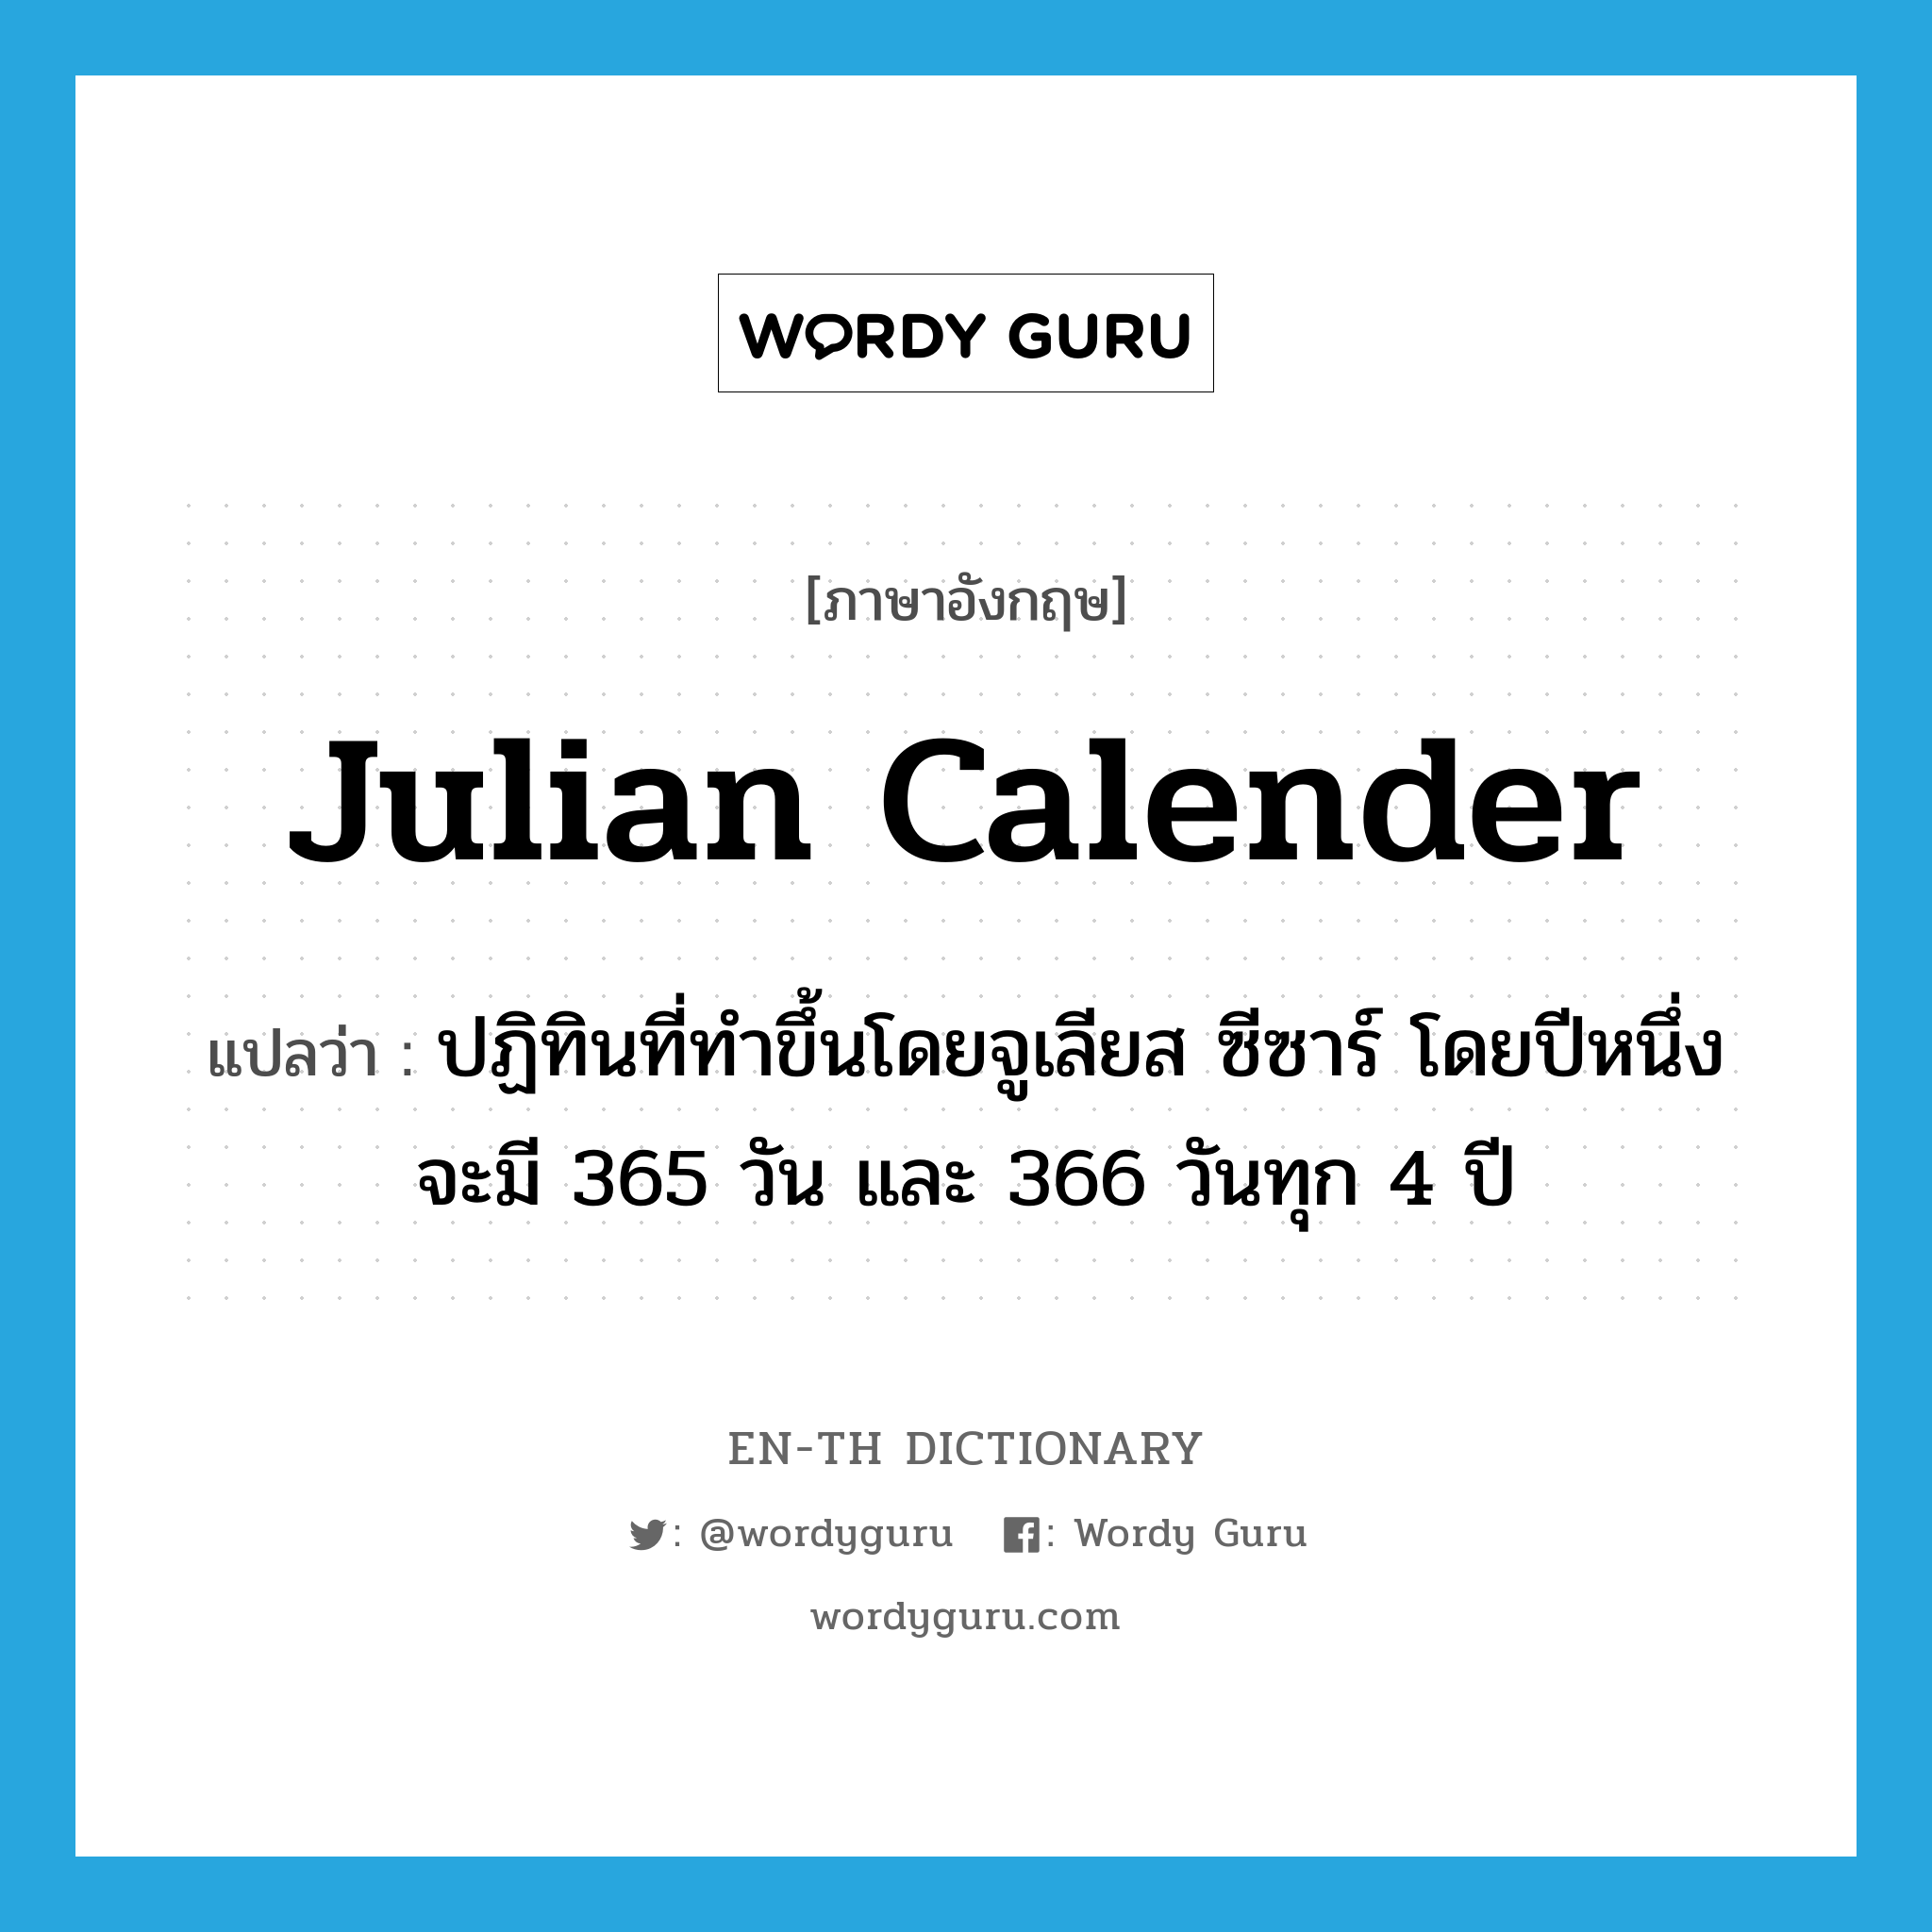 Julian calender แปลว่า?, คำศัพท์ภาษาอังกฤษ Julian calender แปลว่า ปฏิทินที่ทำขึ้นโดยจูเลียส ซีซาร์ โดยปีหนึ่งจะมี 365 วัน และ 366 วันทุก 4 ปี ประเภท N หมวด N